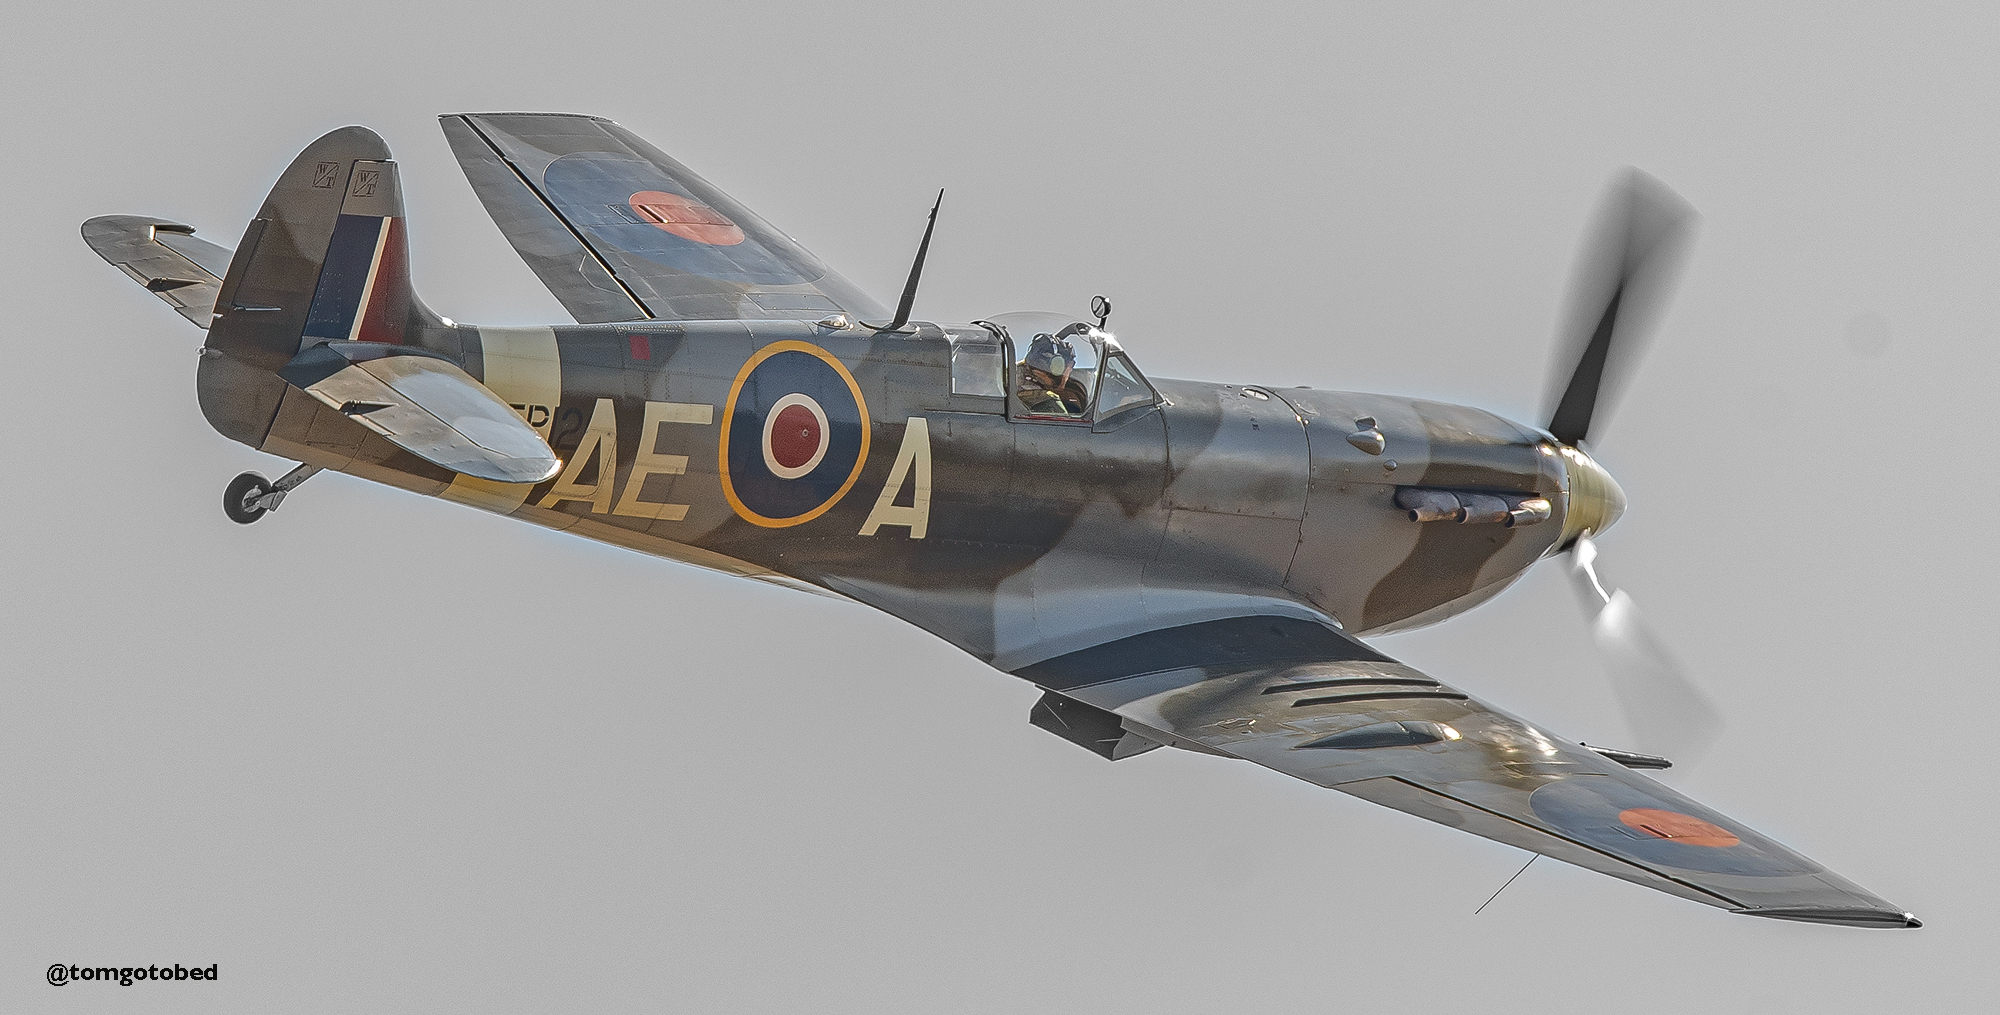 Spitfire aircraft in flight